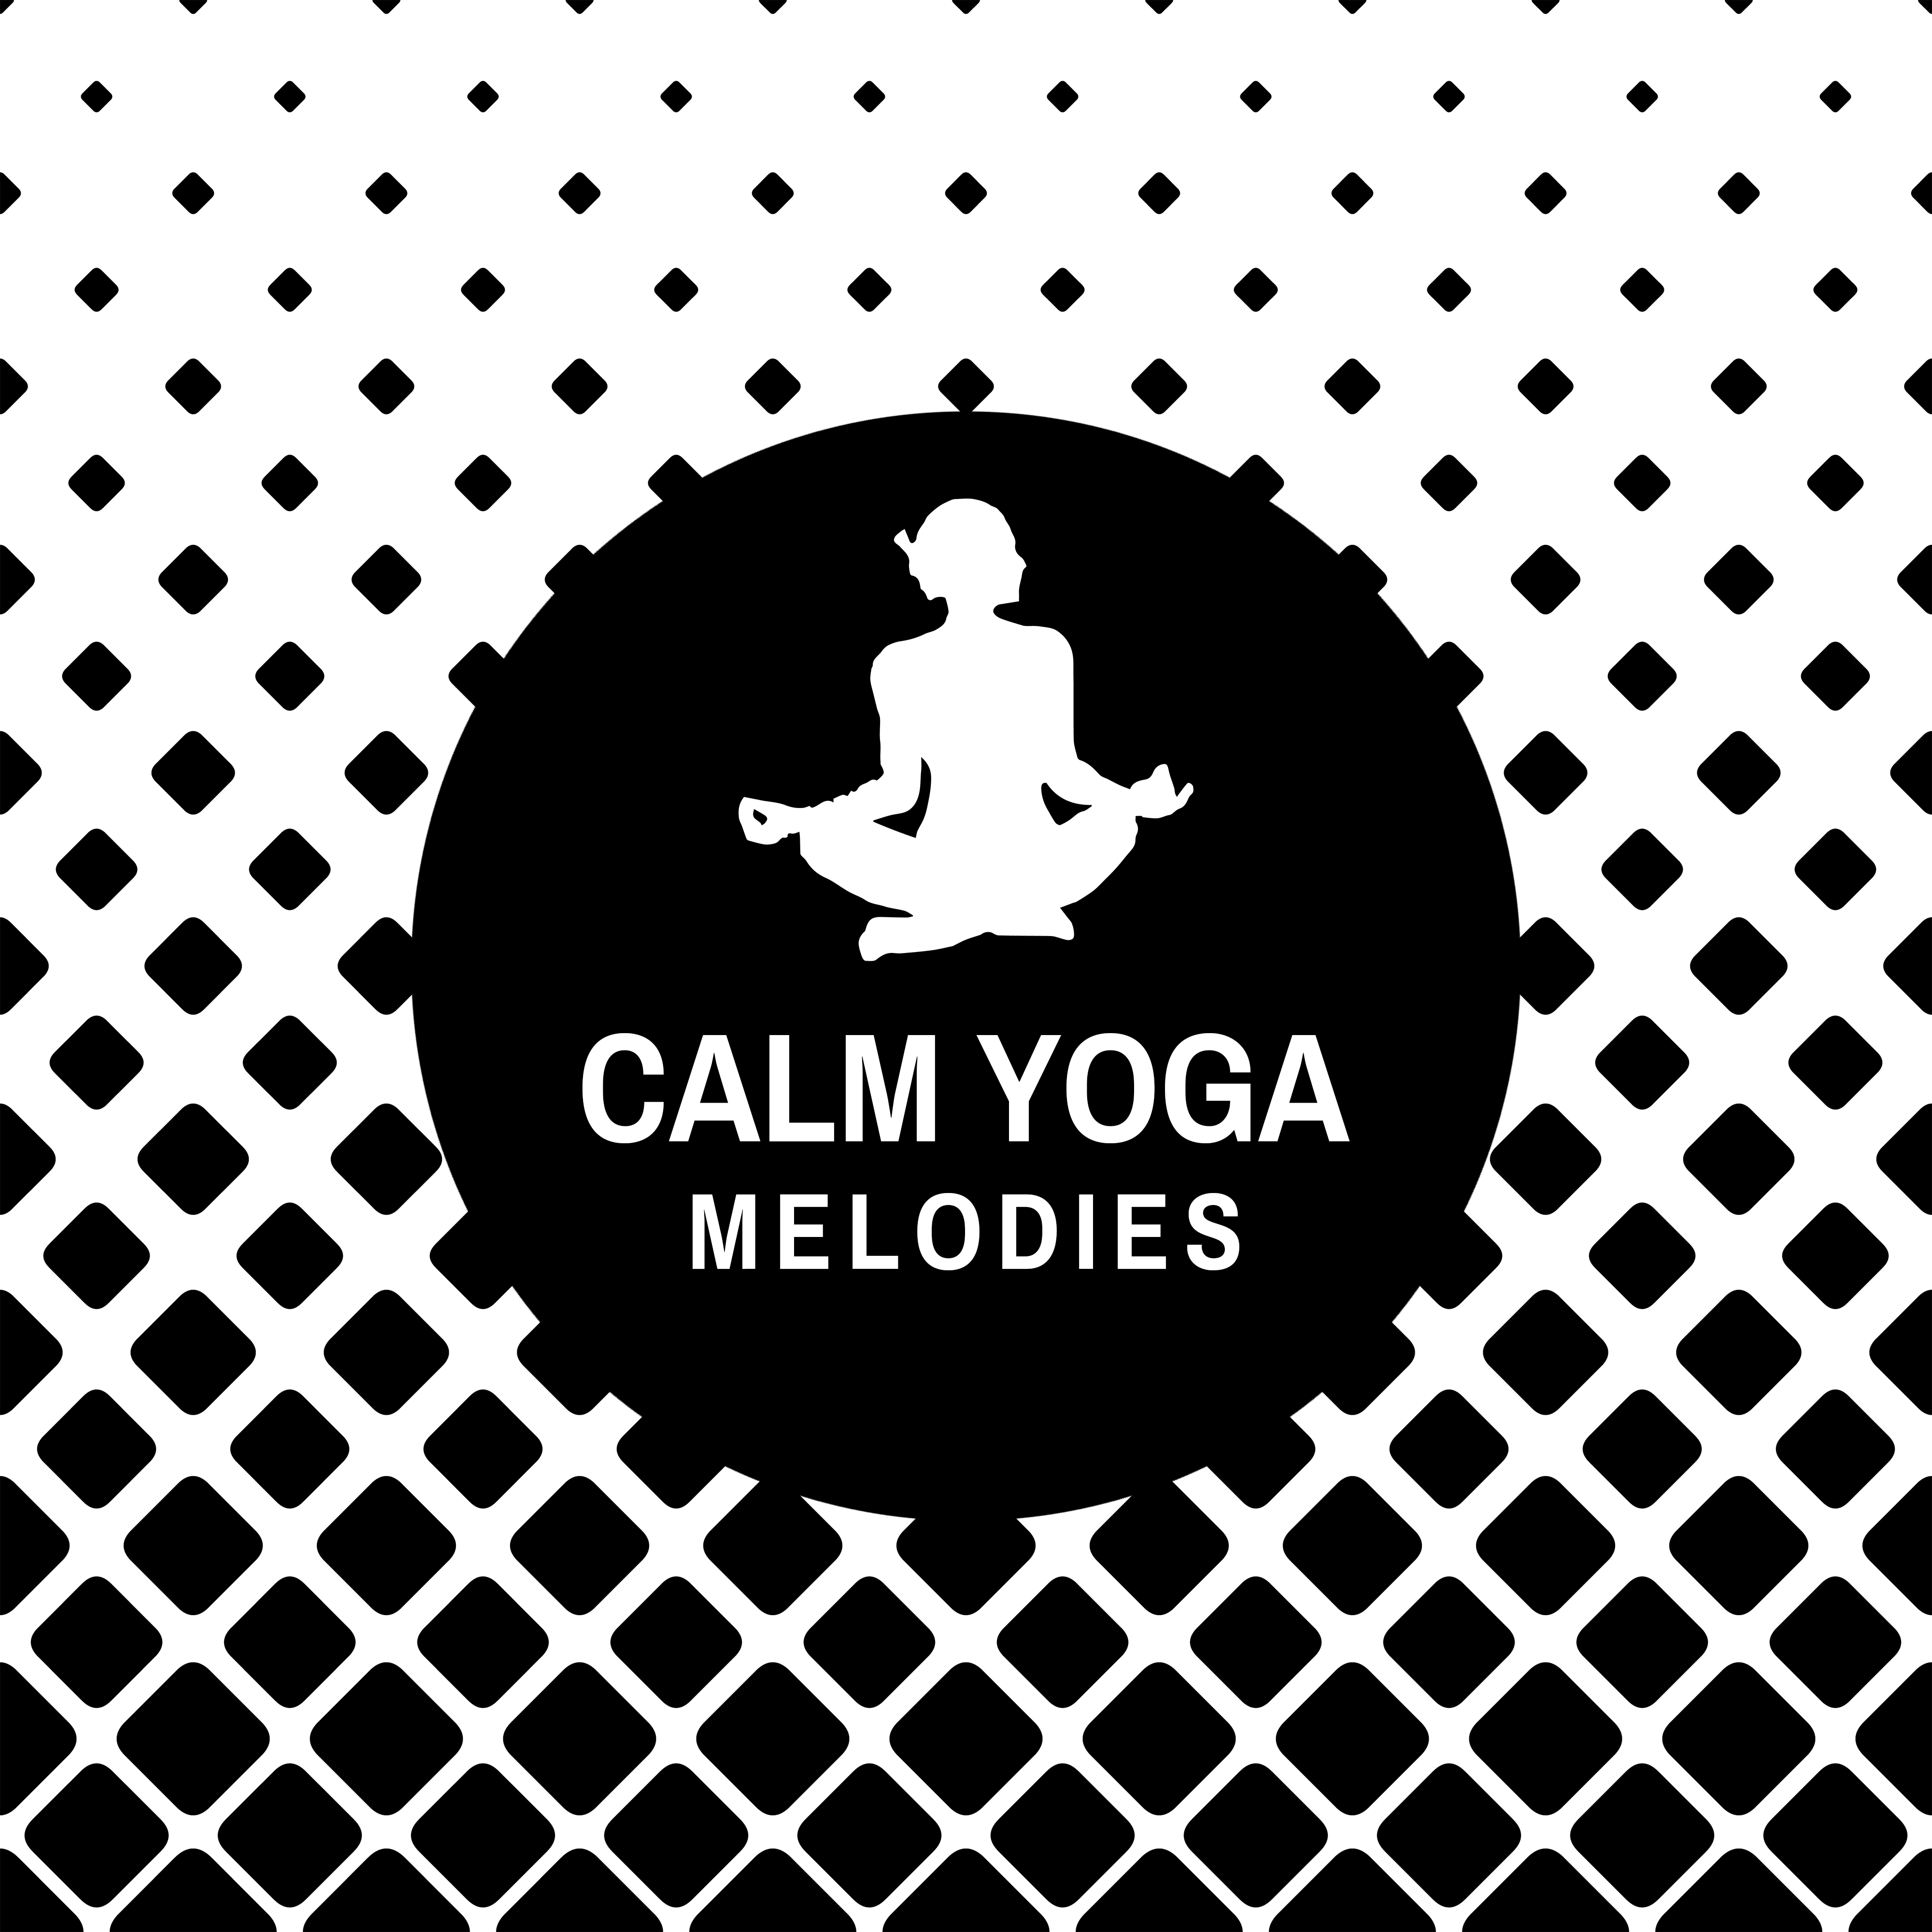 Calm Yoga Melodies